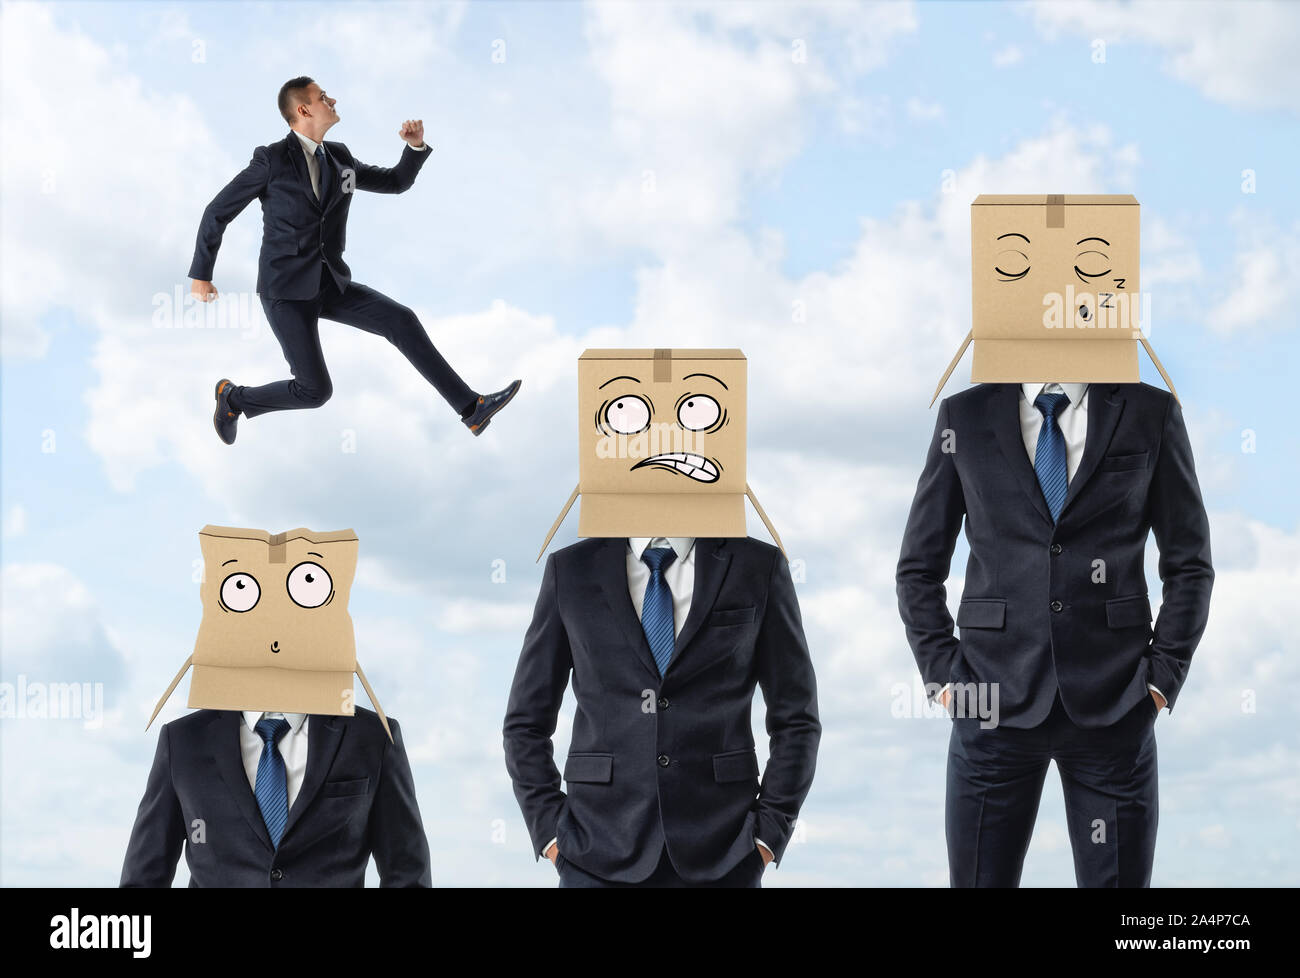 Kleine Unternehmer springen über drei Männer in Anzügen, die tragen Kartons mit bemalten Gesichtern. Stockfoto